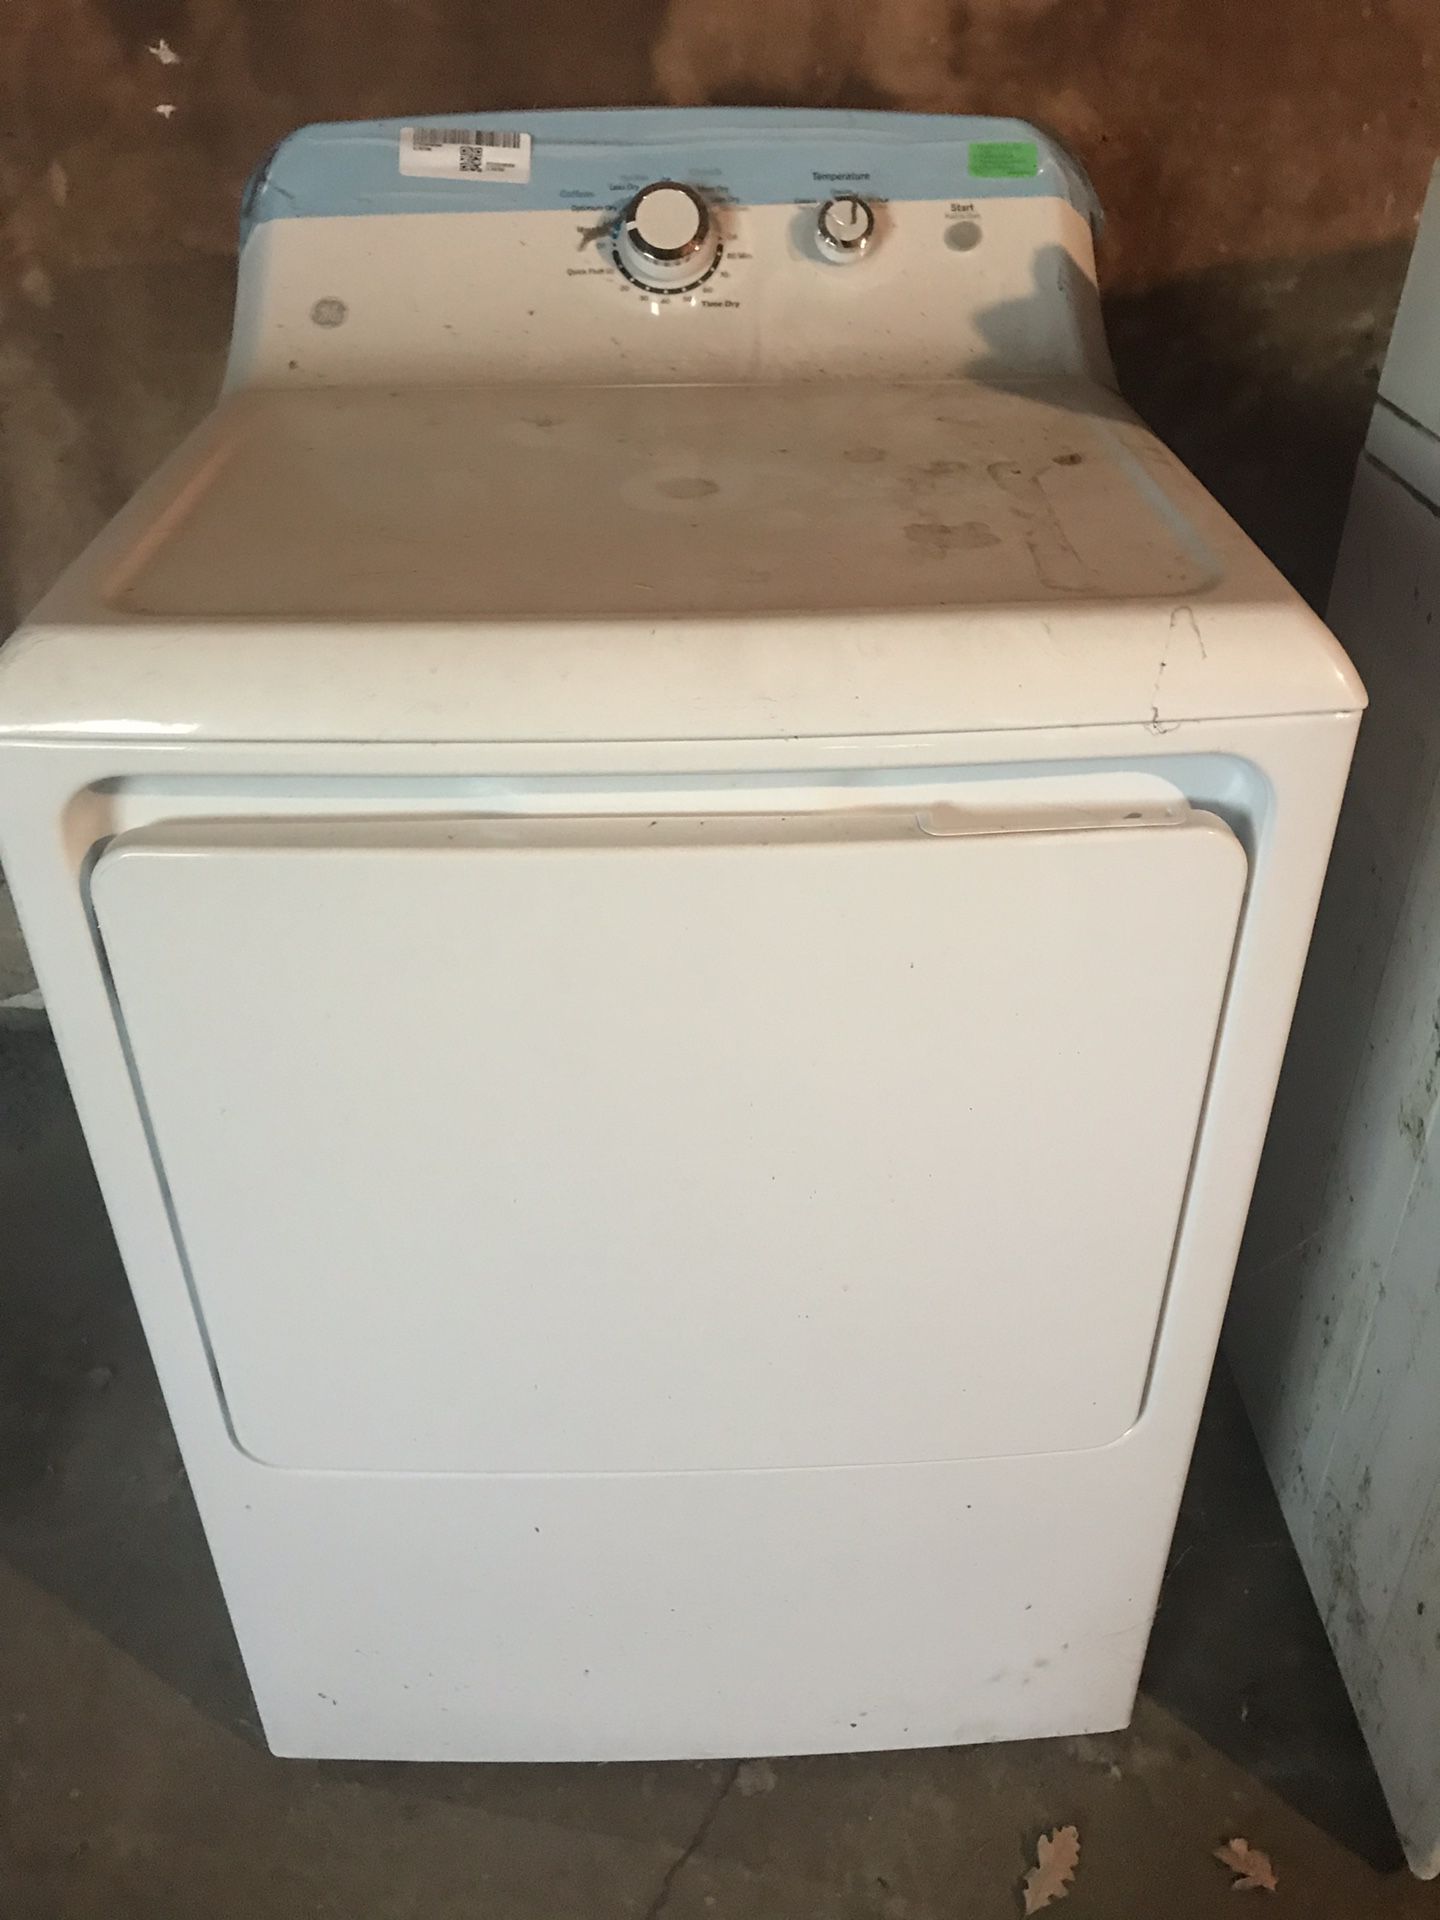 Used dryer